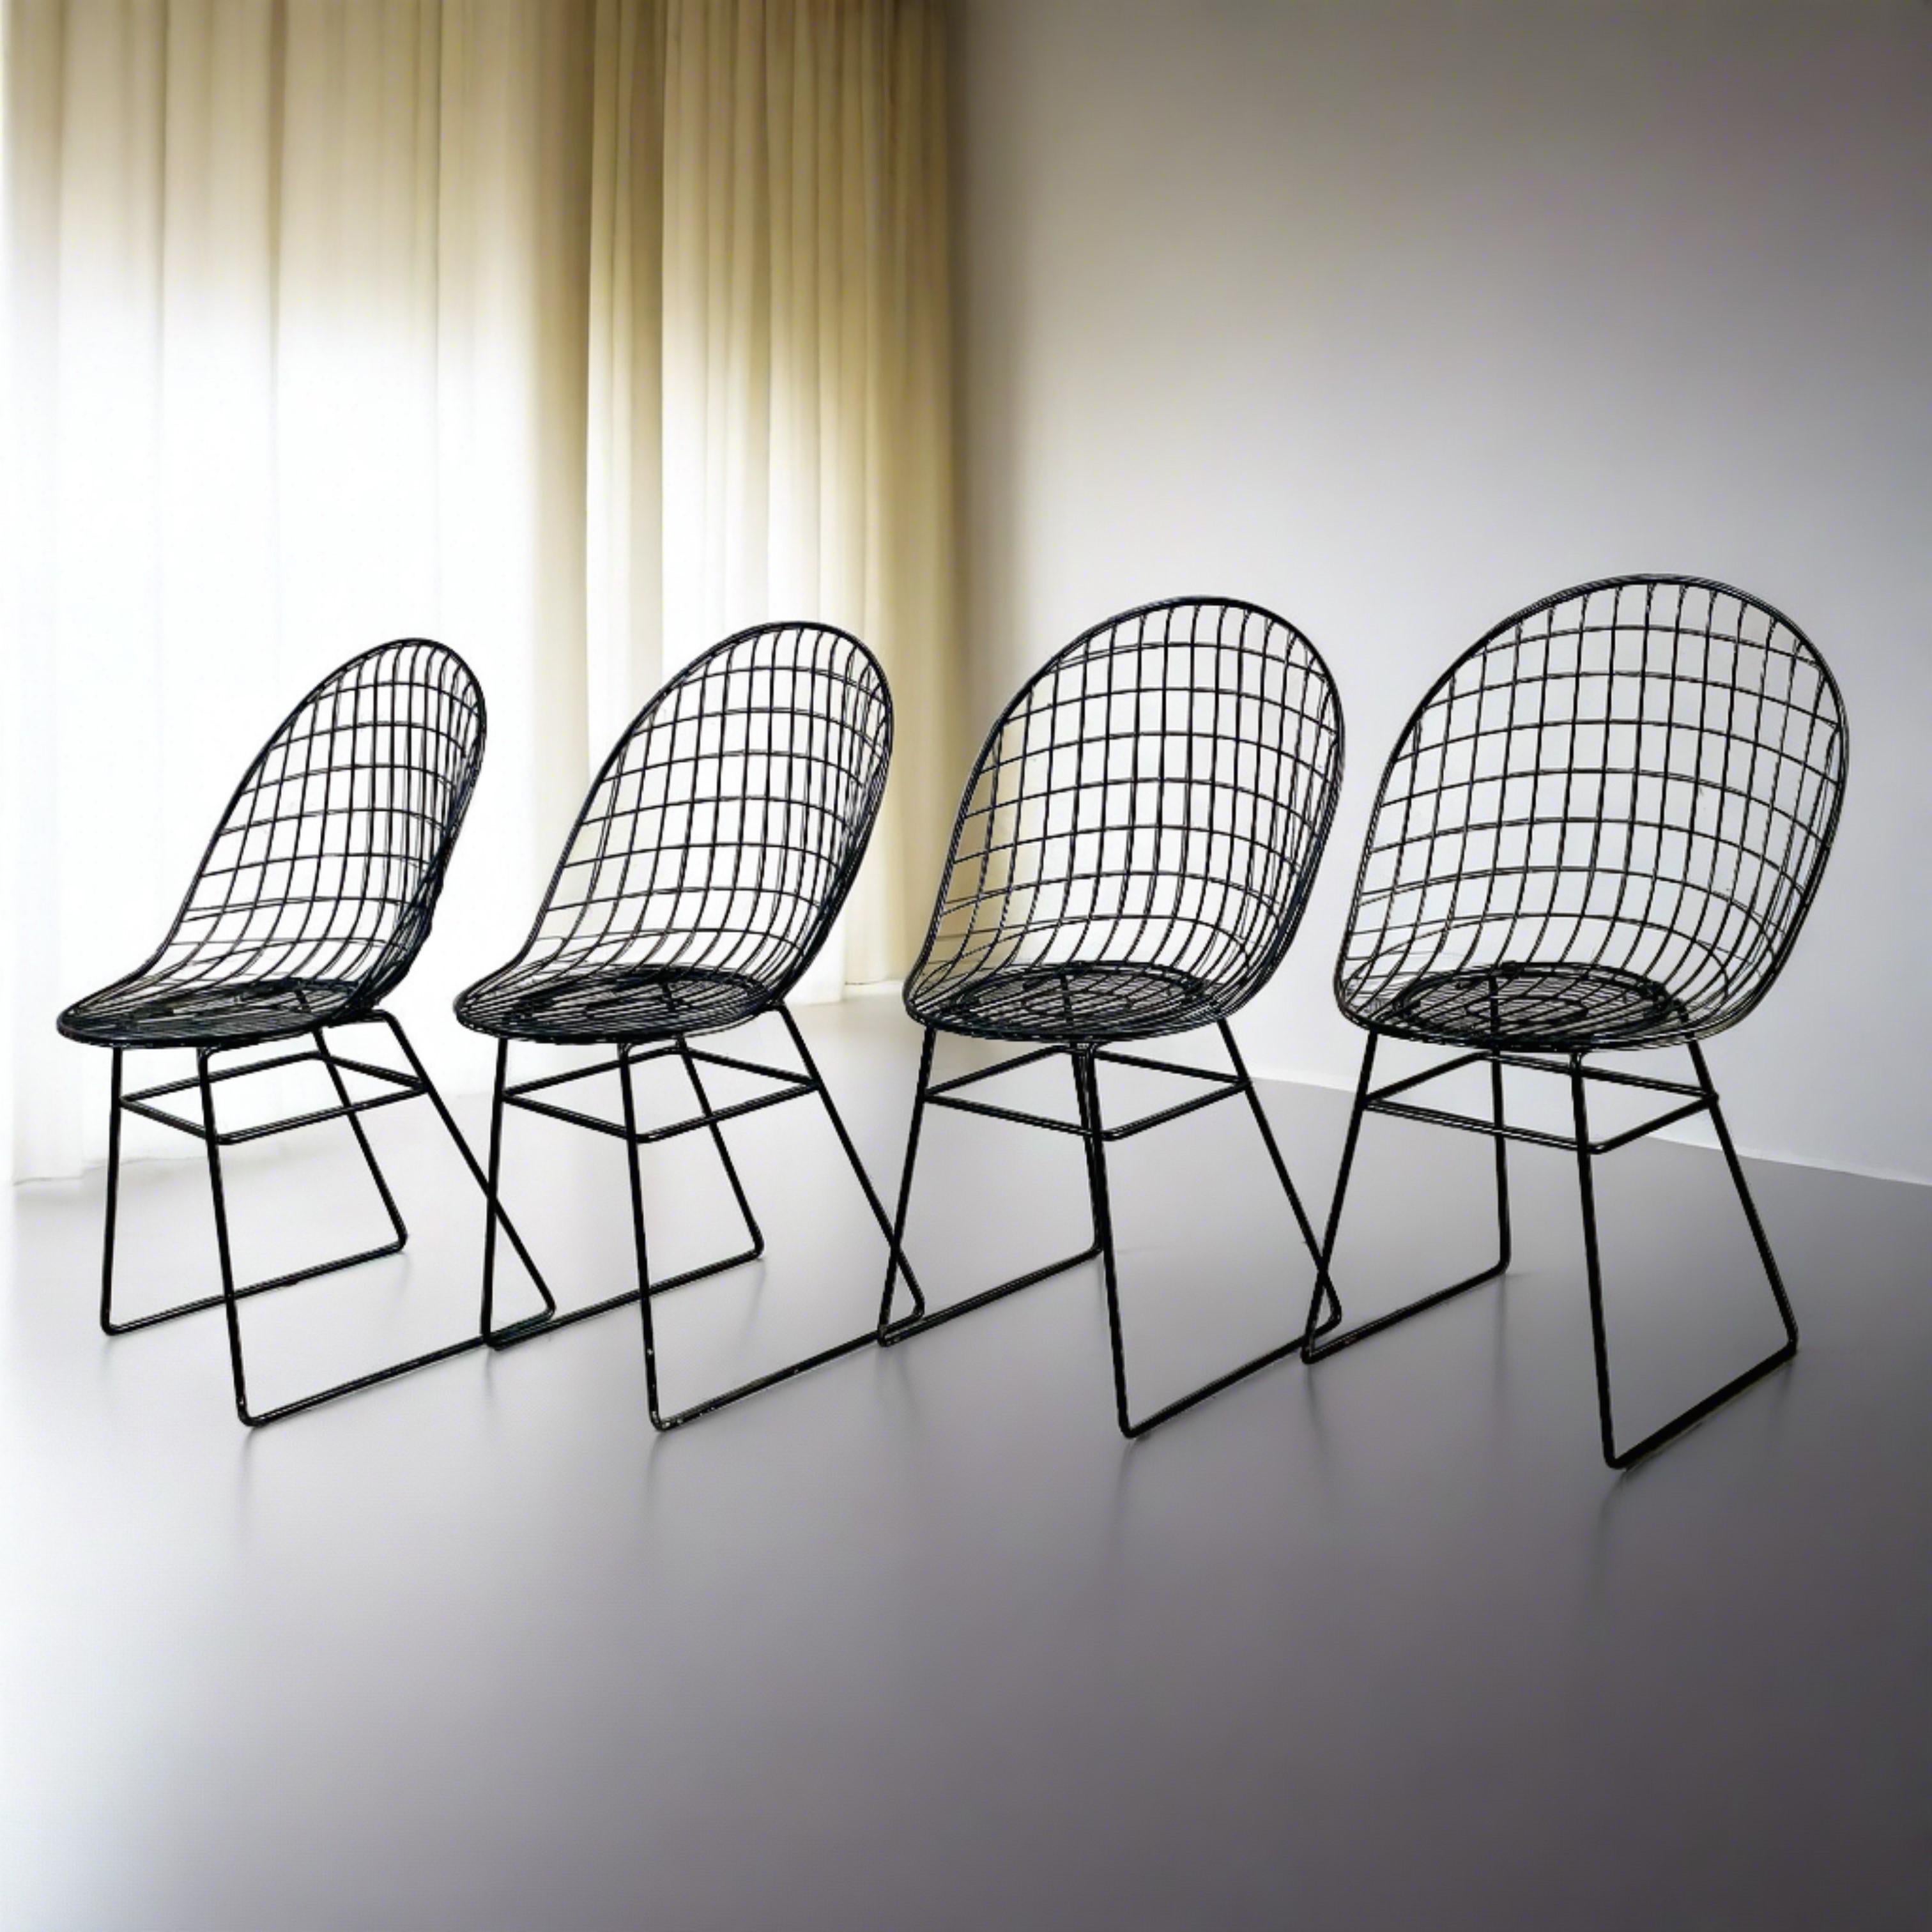 Vous souhaitez ajouter une touche d'élégance mid-century à votre espace repas ? Ne cherchez pas plus loin que cet ensemble exquis de 4 chaises Wire en édition anticipée par les designers renommés Cees Braakman et A.Dekker pour UMS Pastoe, datant des